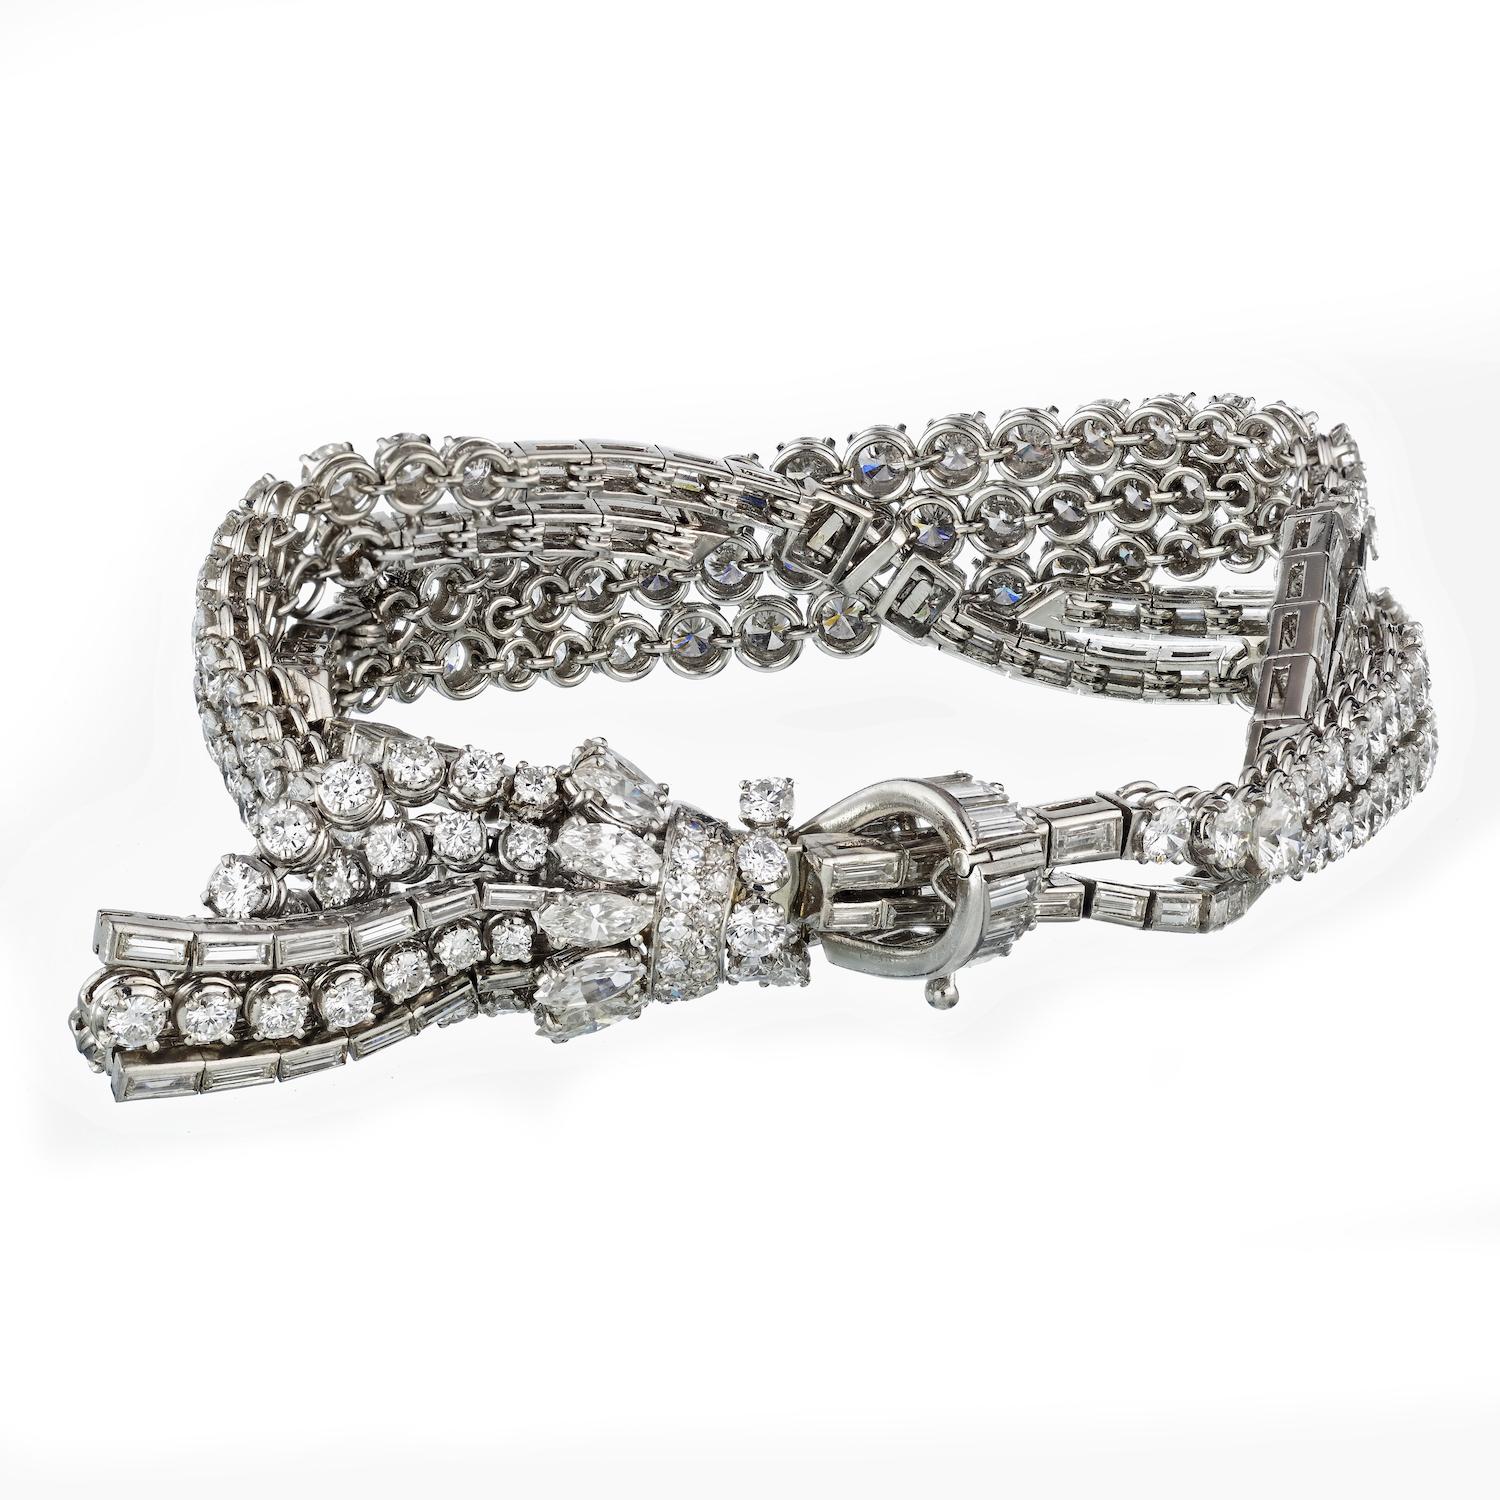 CIRCA 1950's Platin 30 Karat Runde Diamant Quaste Armband. 

Hüllen Sie sich in die Opulenz vergangener Zeiten mit unserem Circa 1950's Platinum Tassel Bracelet. Dieses zeitlose Schmuckstück ist mit 30 Karat Diamanten im Rund- und Baguetteschliff